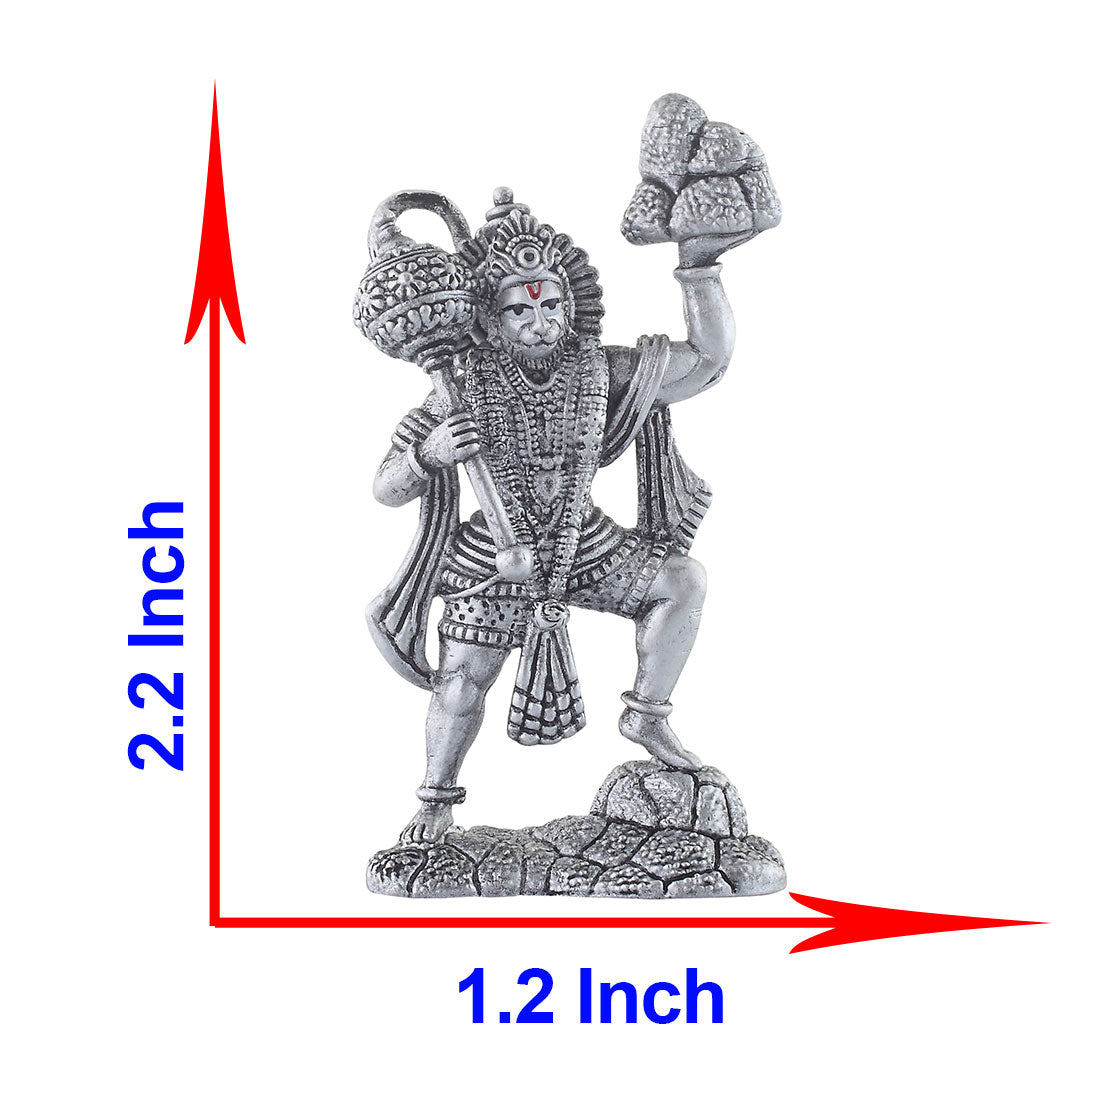 size of hanuman silver idol